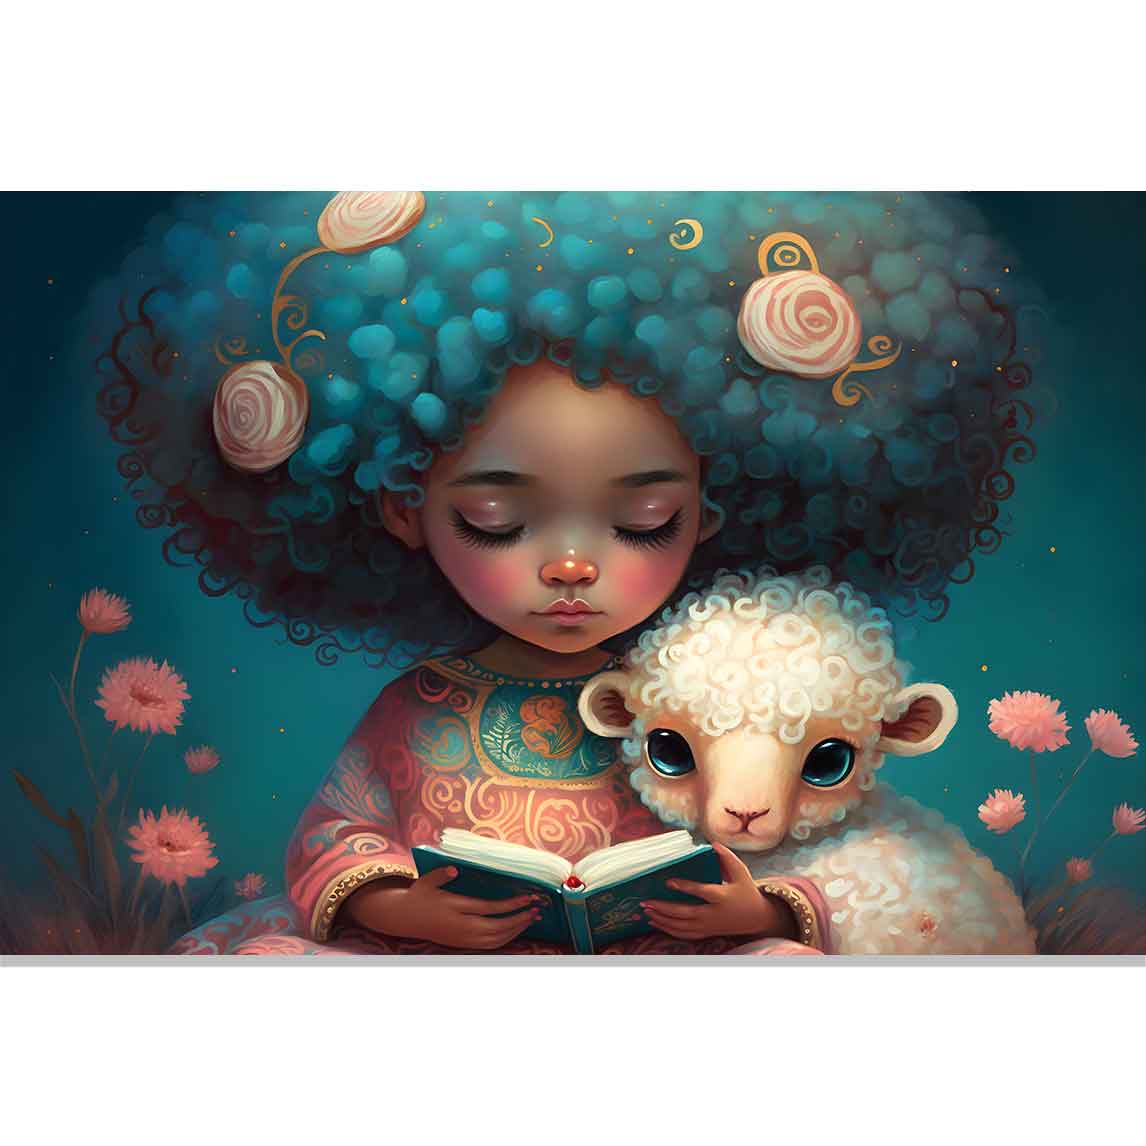 SHEEPWELL - Süßes Mädchen mit Schaf